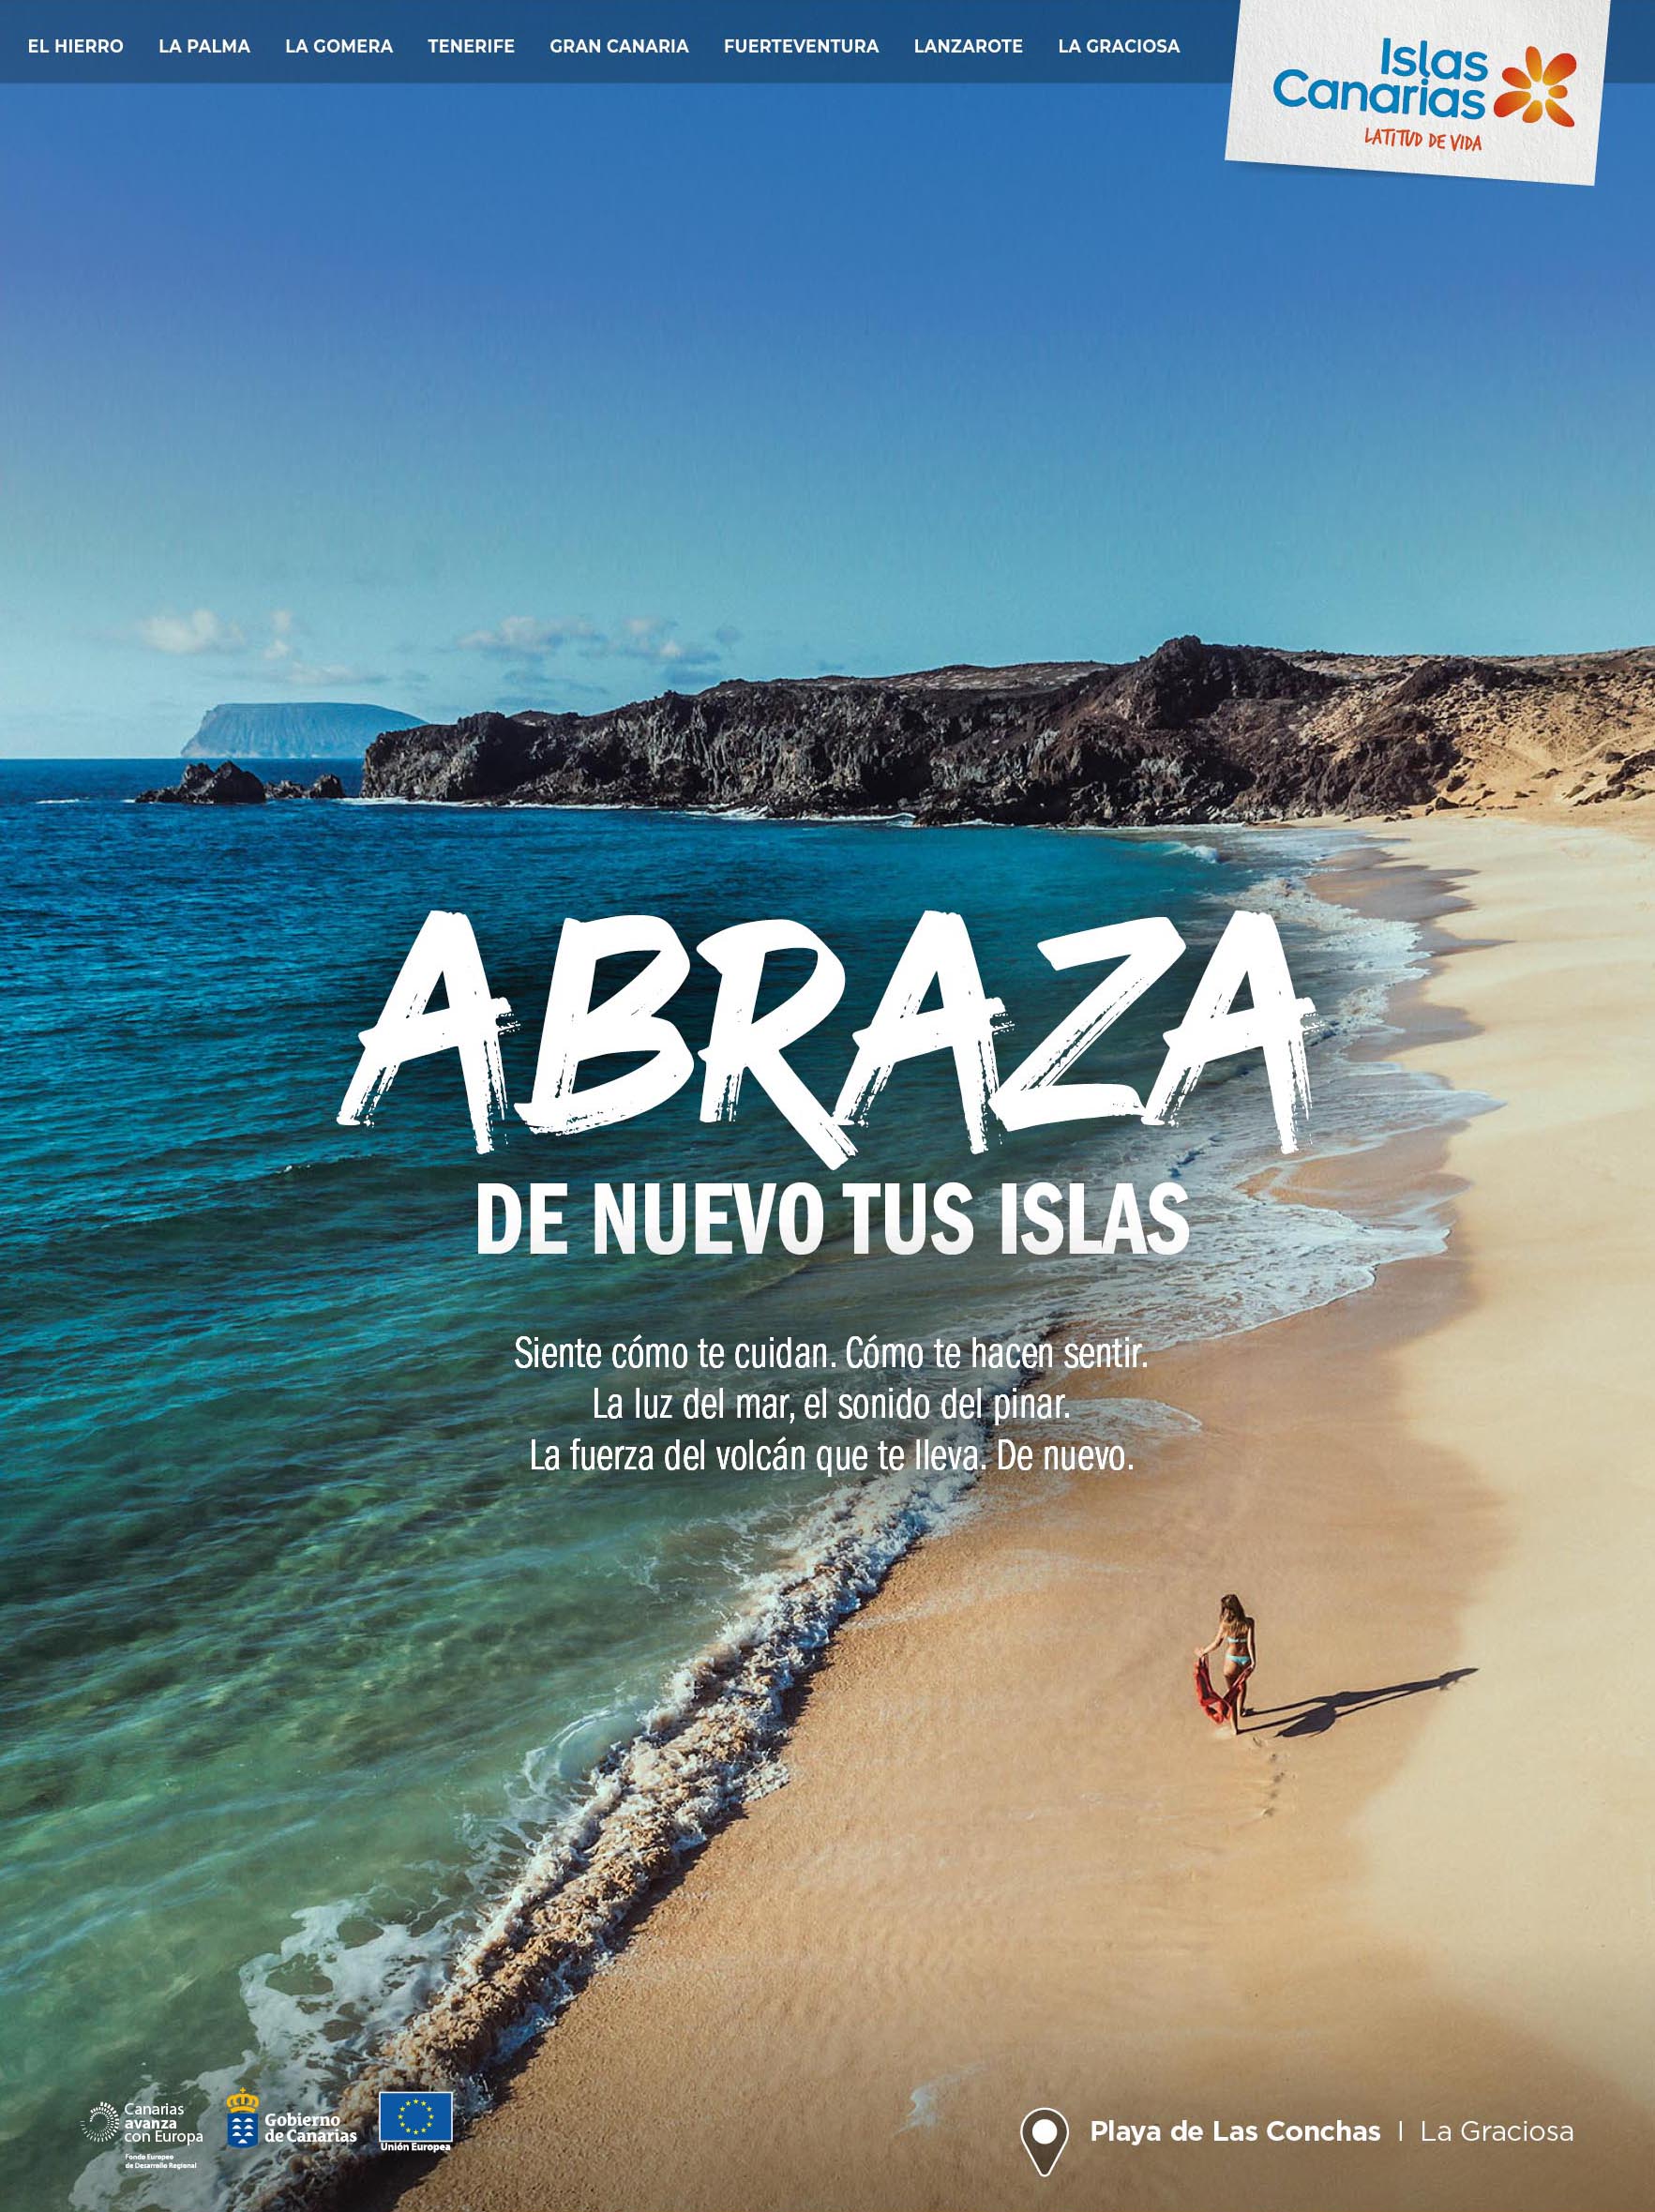 Islas Canarias Abraza de nuevo tus islas Junio 2020 2